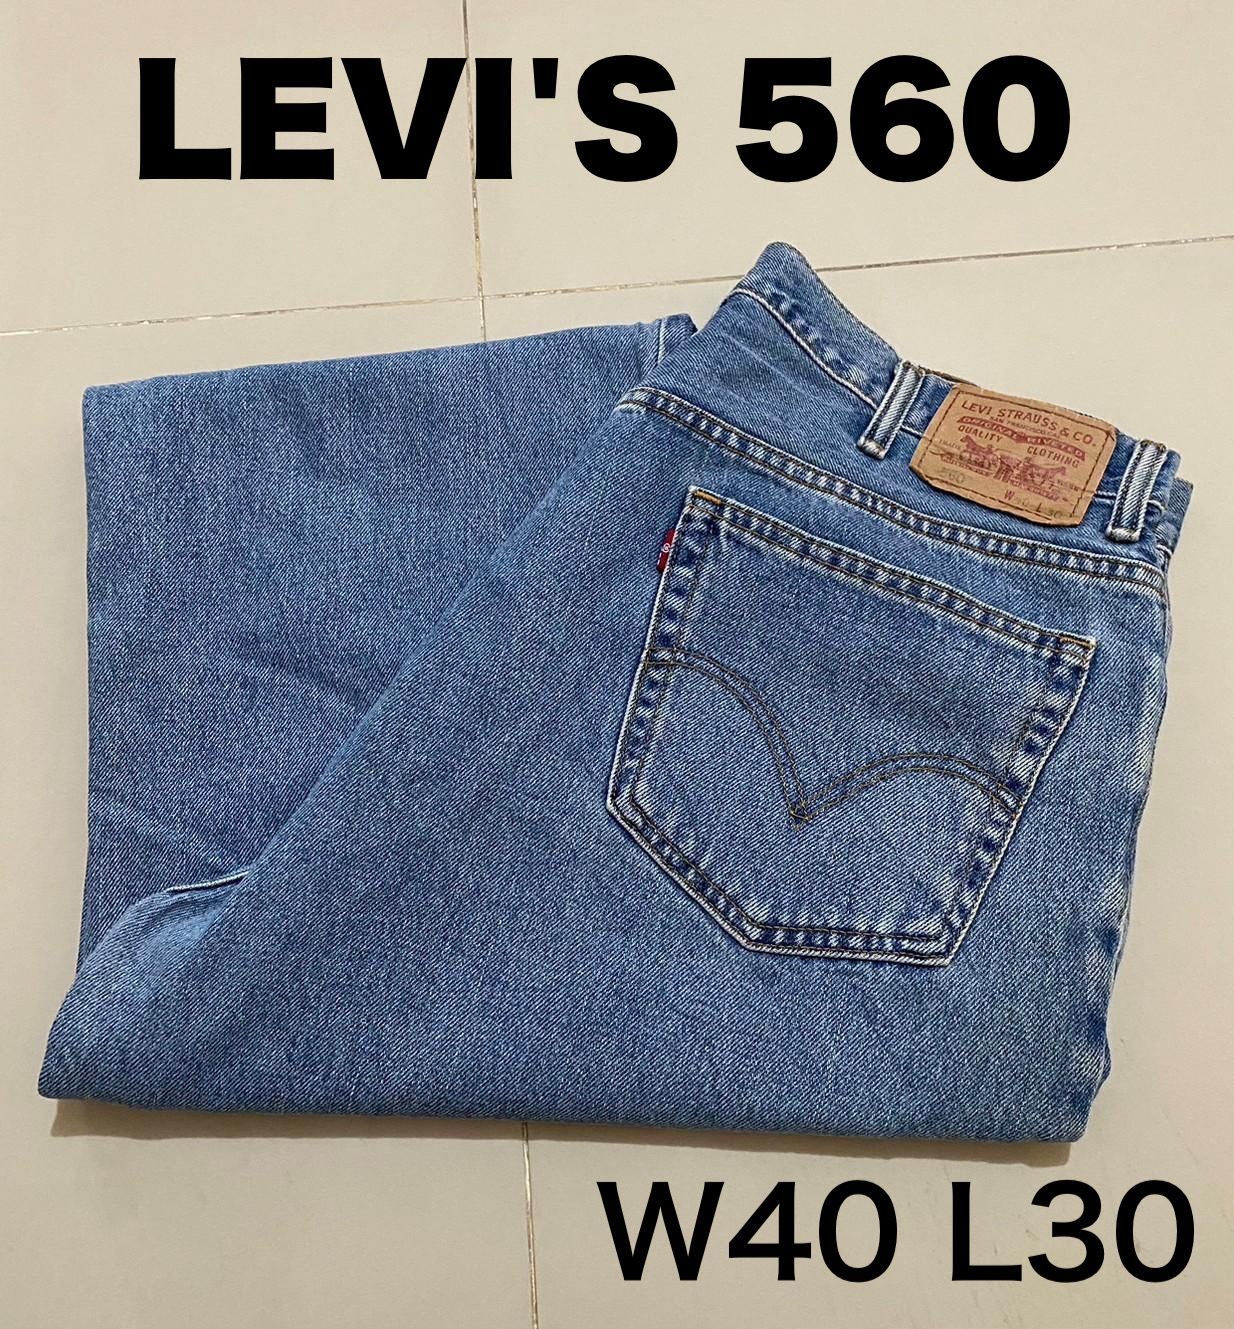 T301【Levi's 560】W40 L30 インディゴブルー メキシコ製 ワイド 